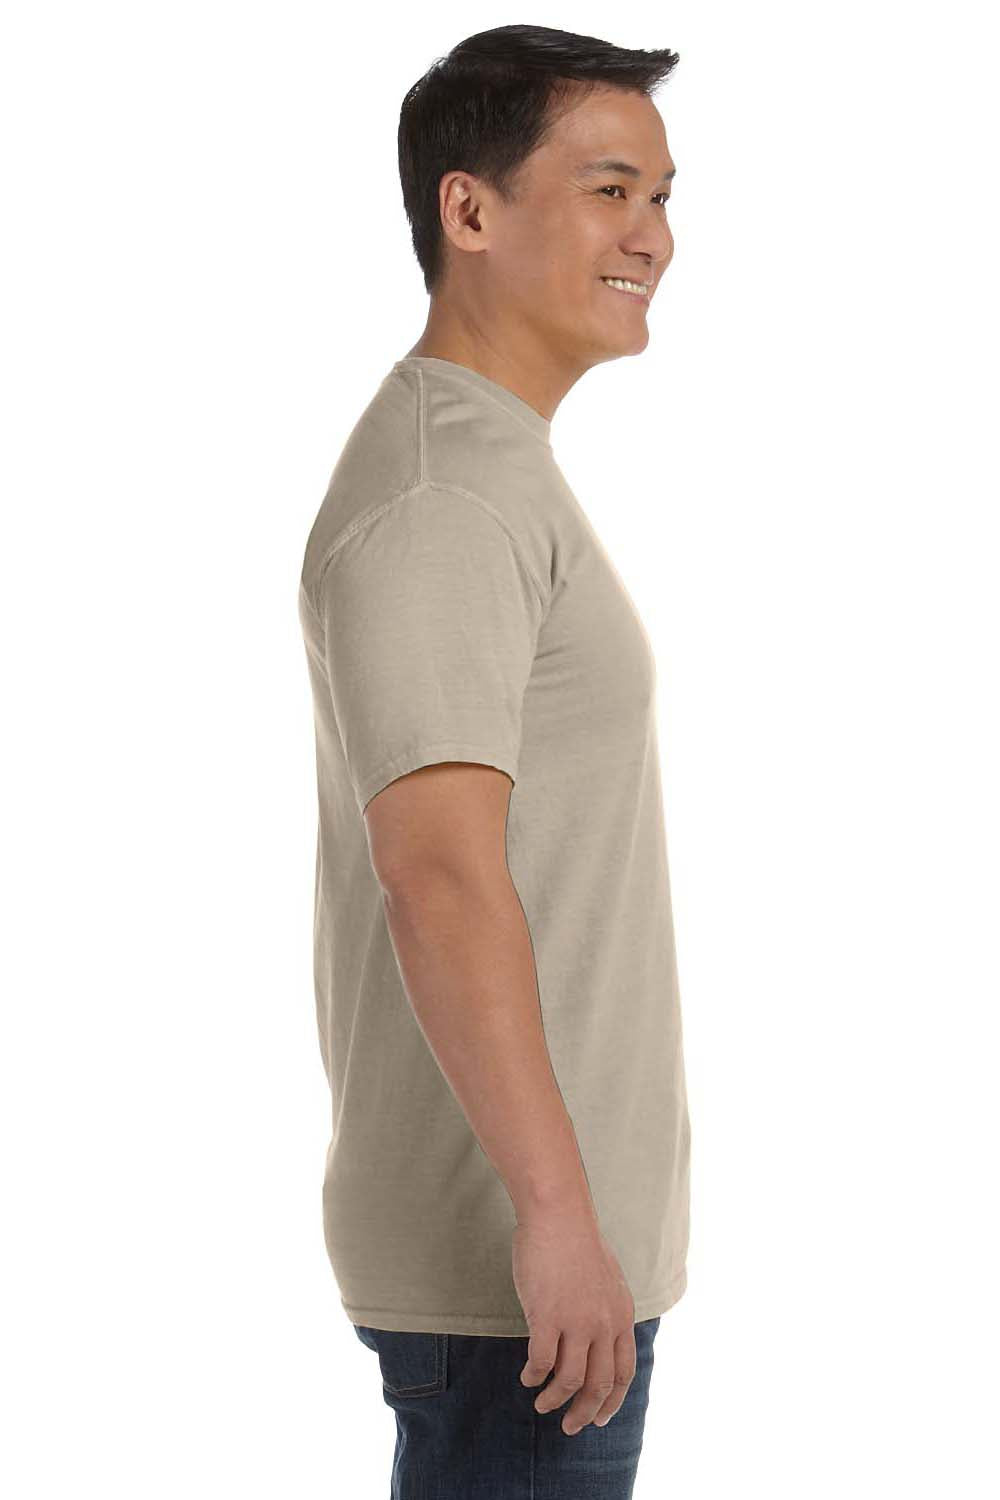 Comfort Colors C1717 Mens Short Sleeve Crewneck T-Shirt Sandstone Brown Side